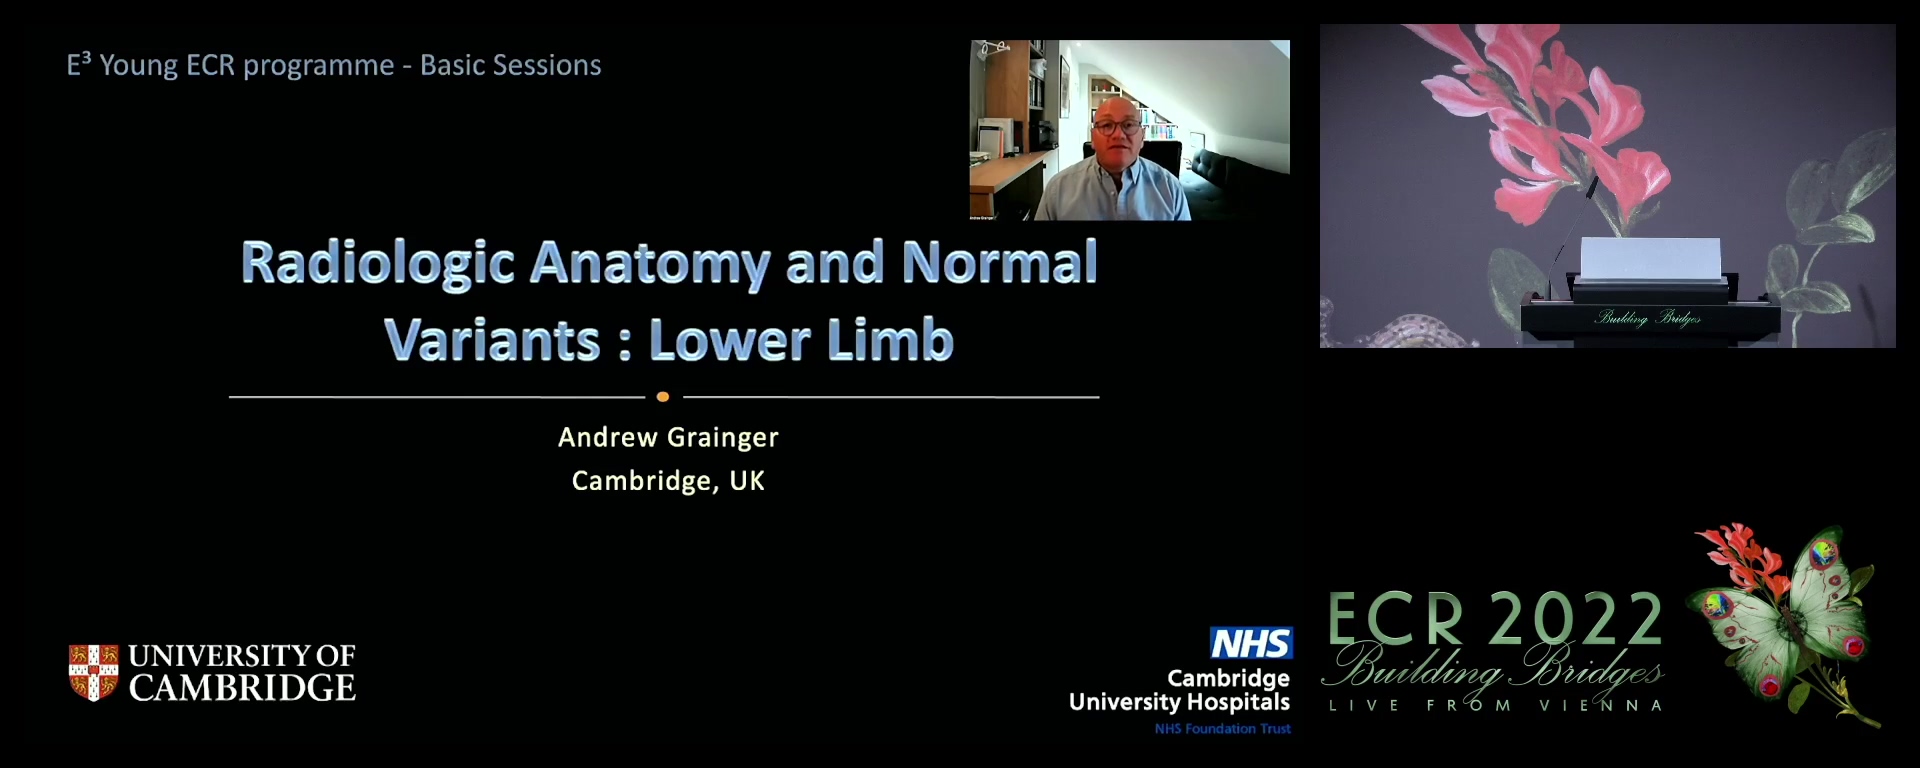 Lower limb - Andrew J. Grainger, Cambridge / UK